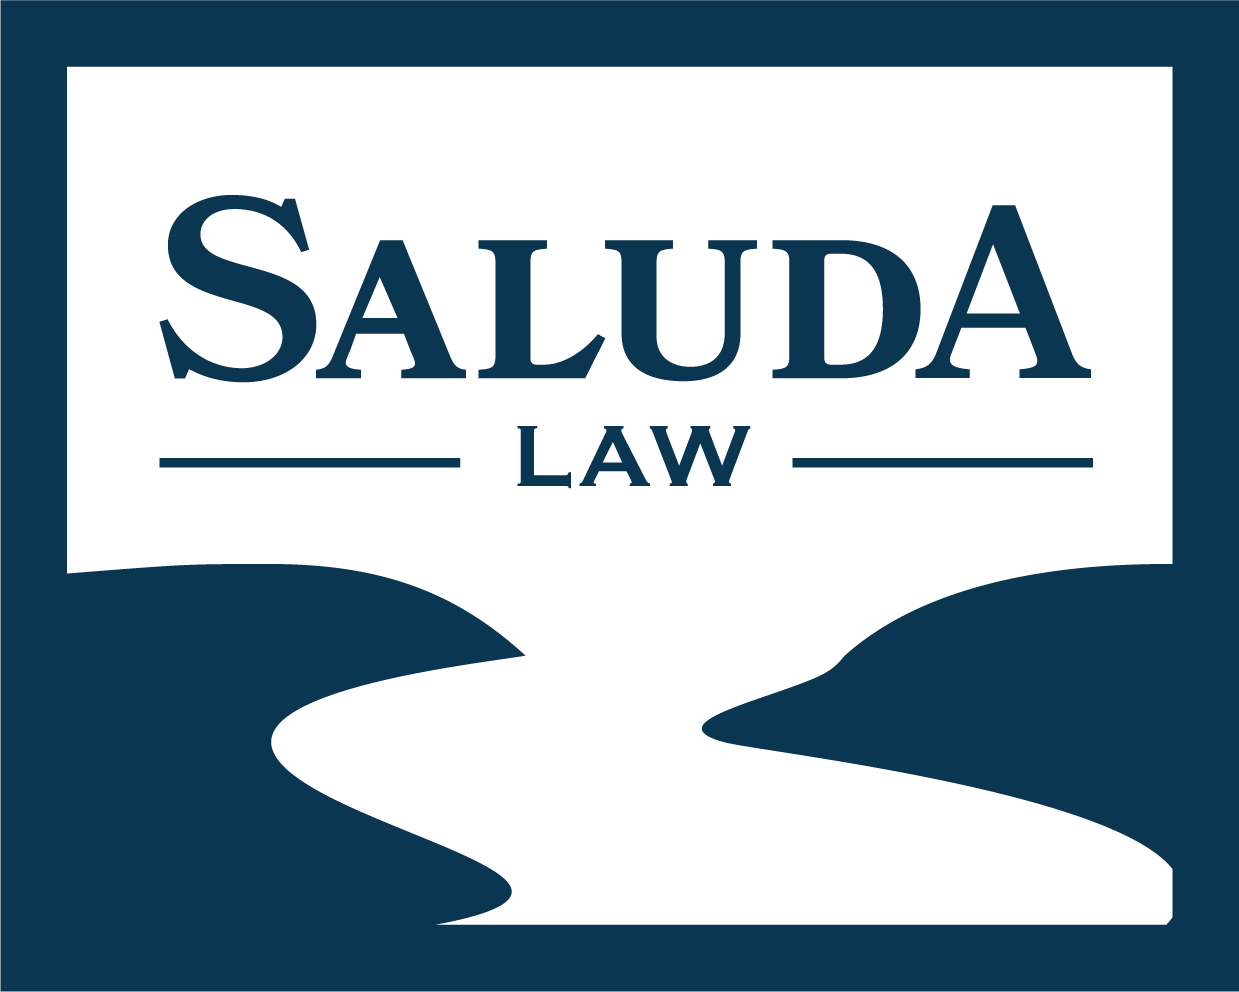 Saluda Law, LLC